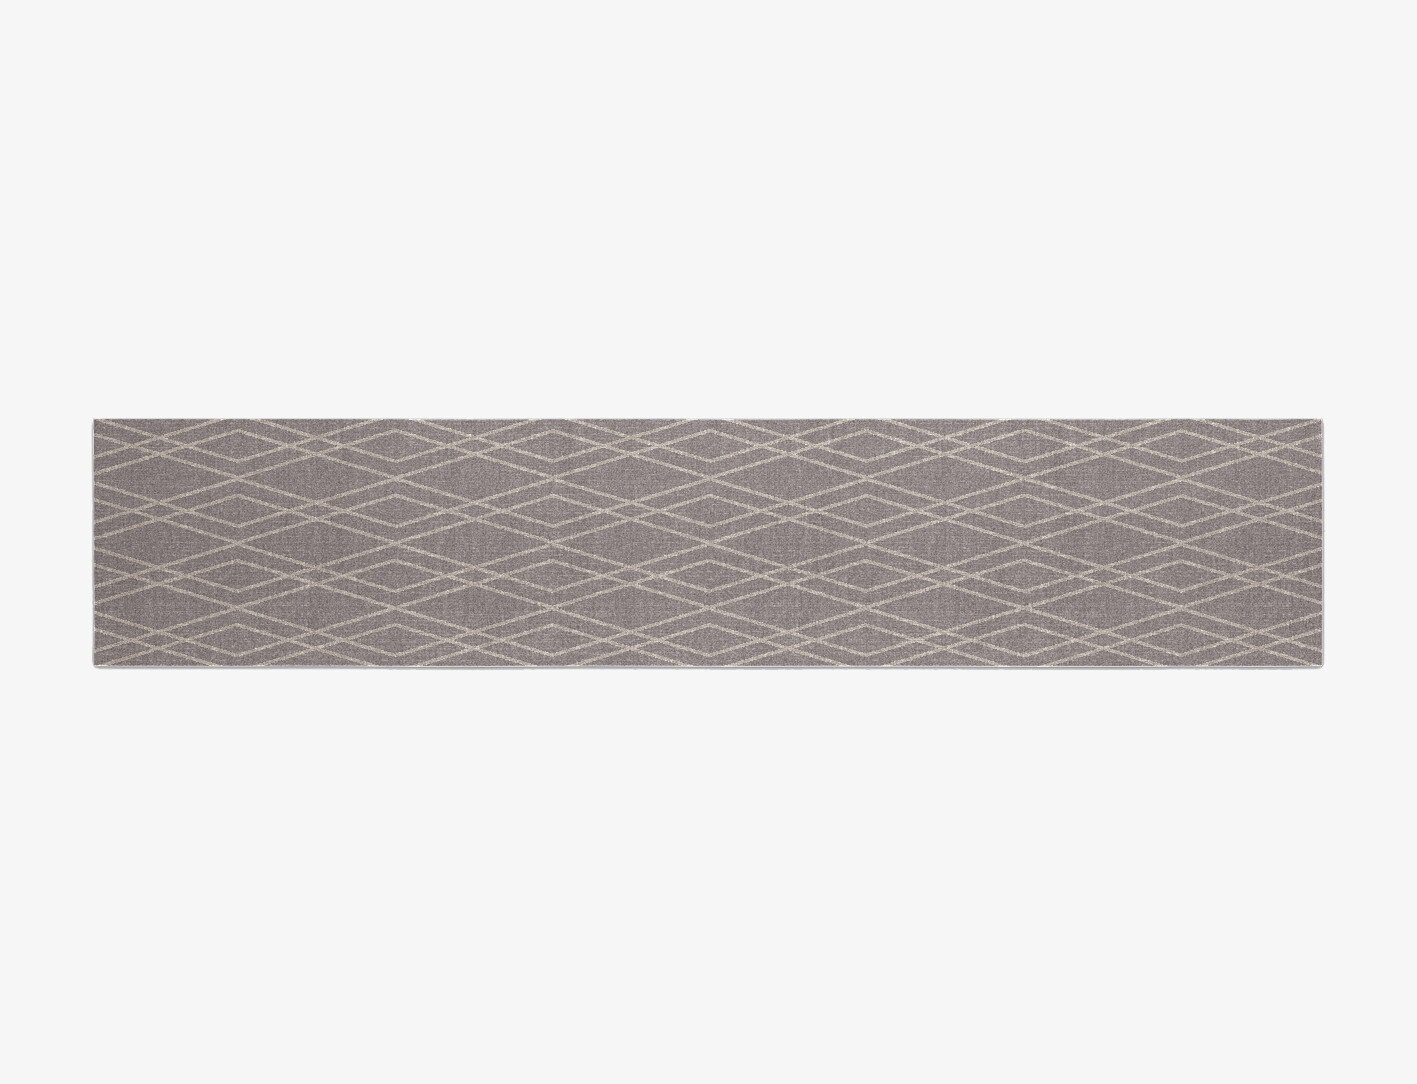 Braid Minimalist Runner Flatweave New Zealand Wool Custom Rug by Rug Artisan